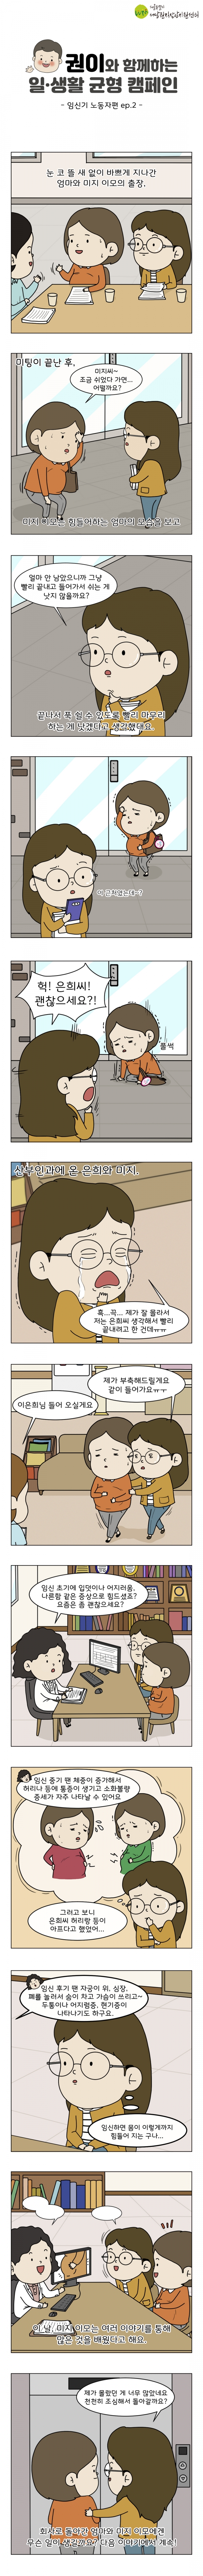 ©서울특별시 서남권직장맘지원센터